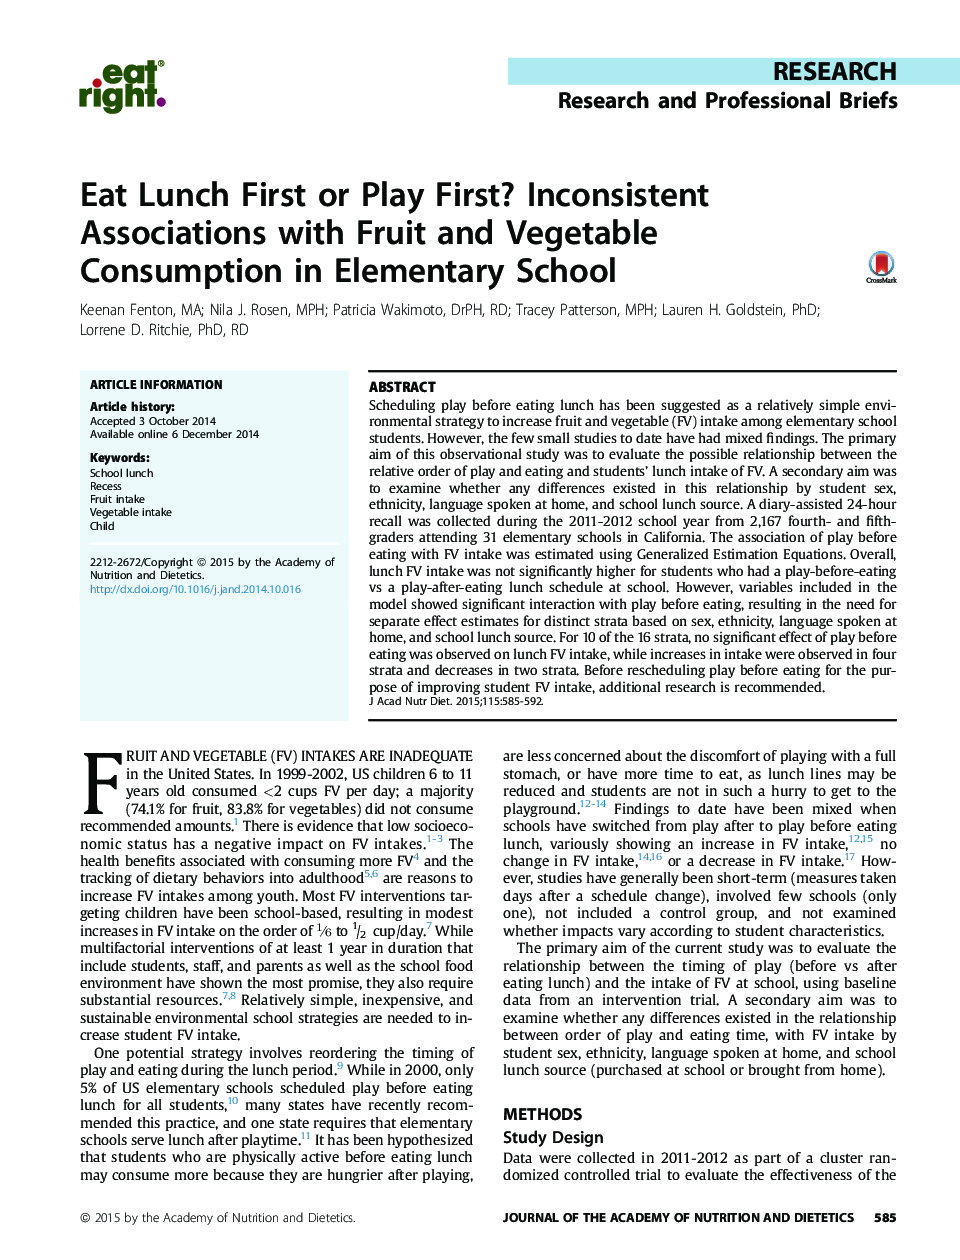 اول ناهار بخورید یا بازی کنید؟ ارتباطات متداول با مصرف میوه و سبزی در مدرسه ابتدایی